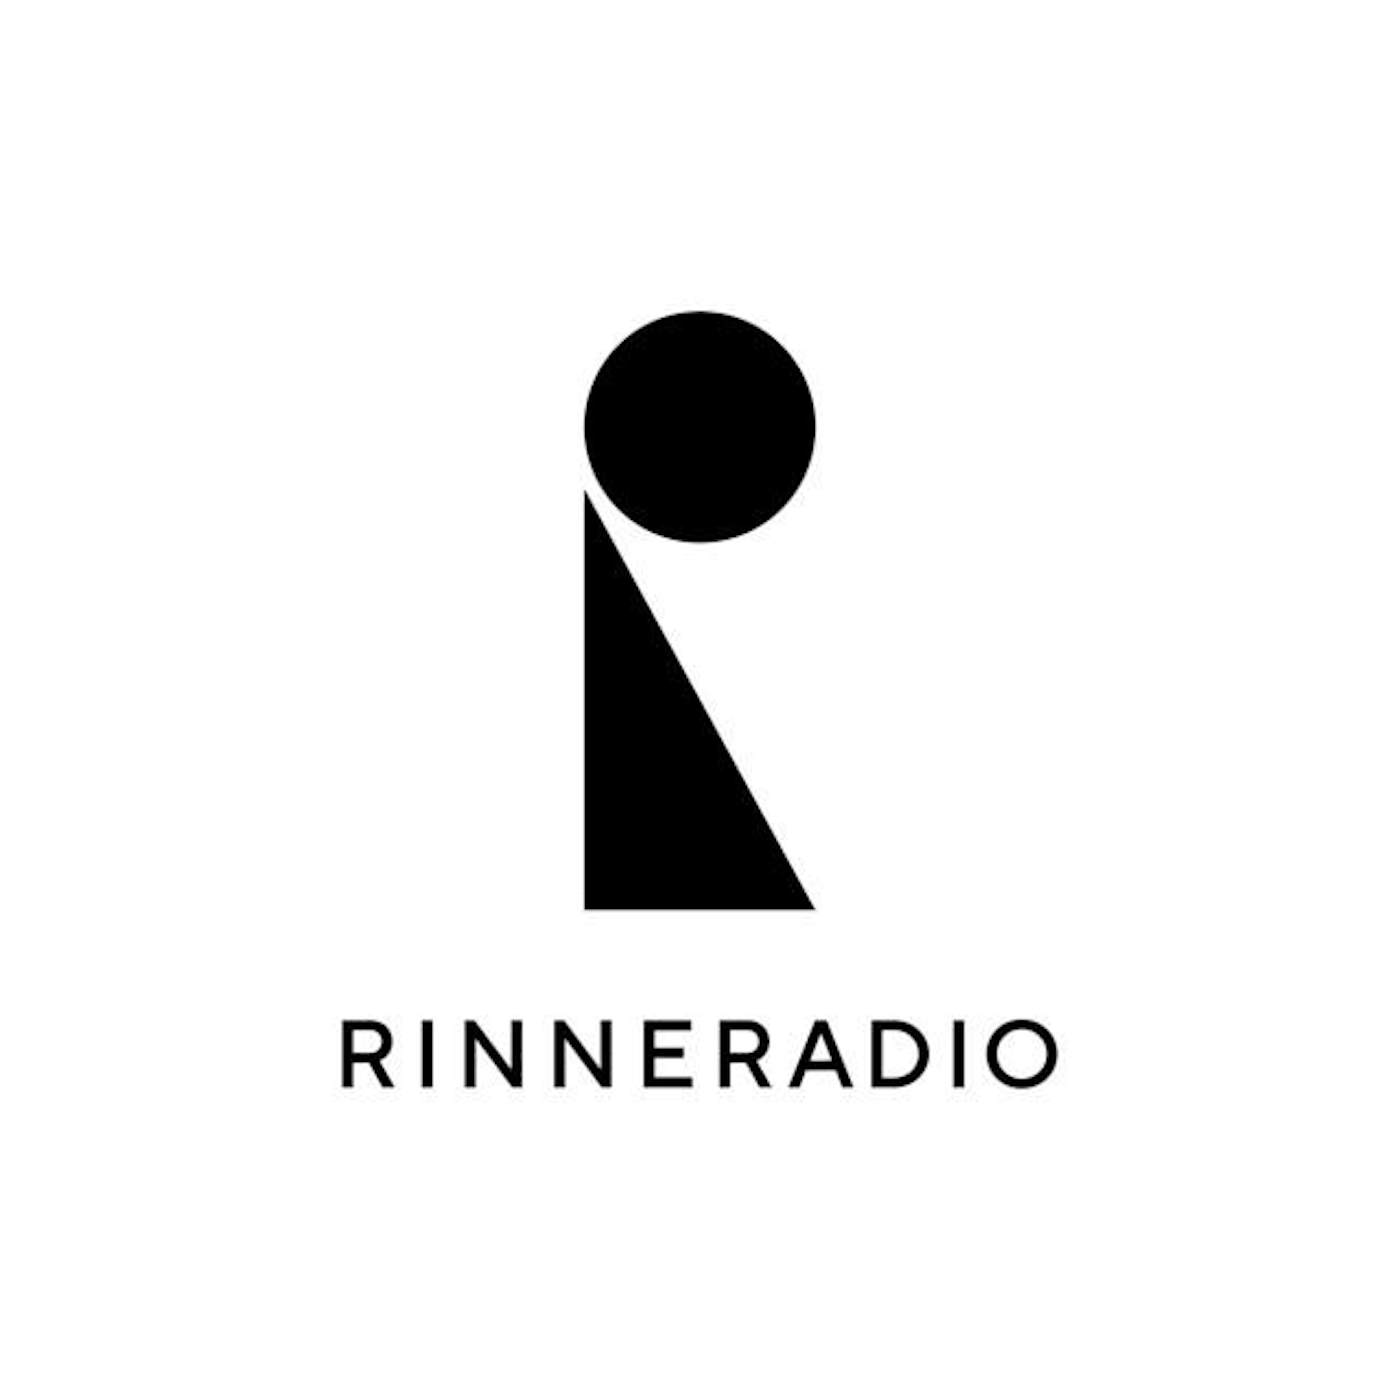 RinneRadio